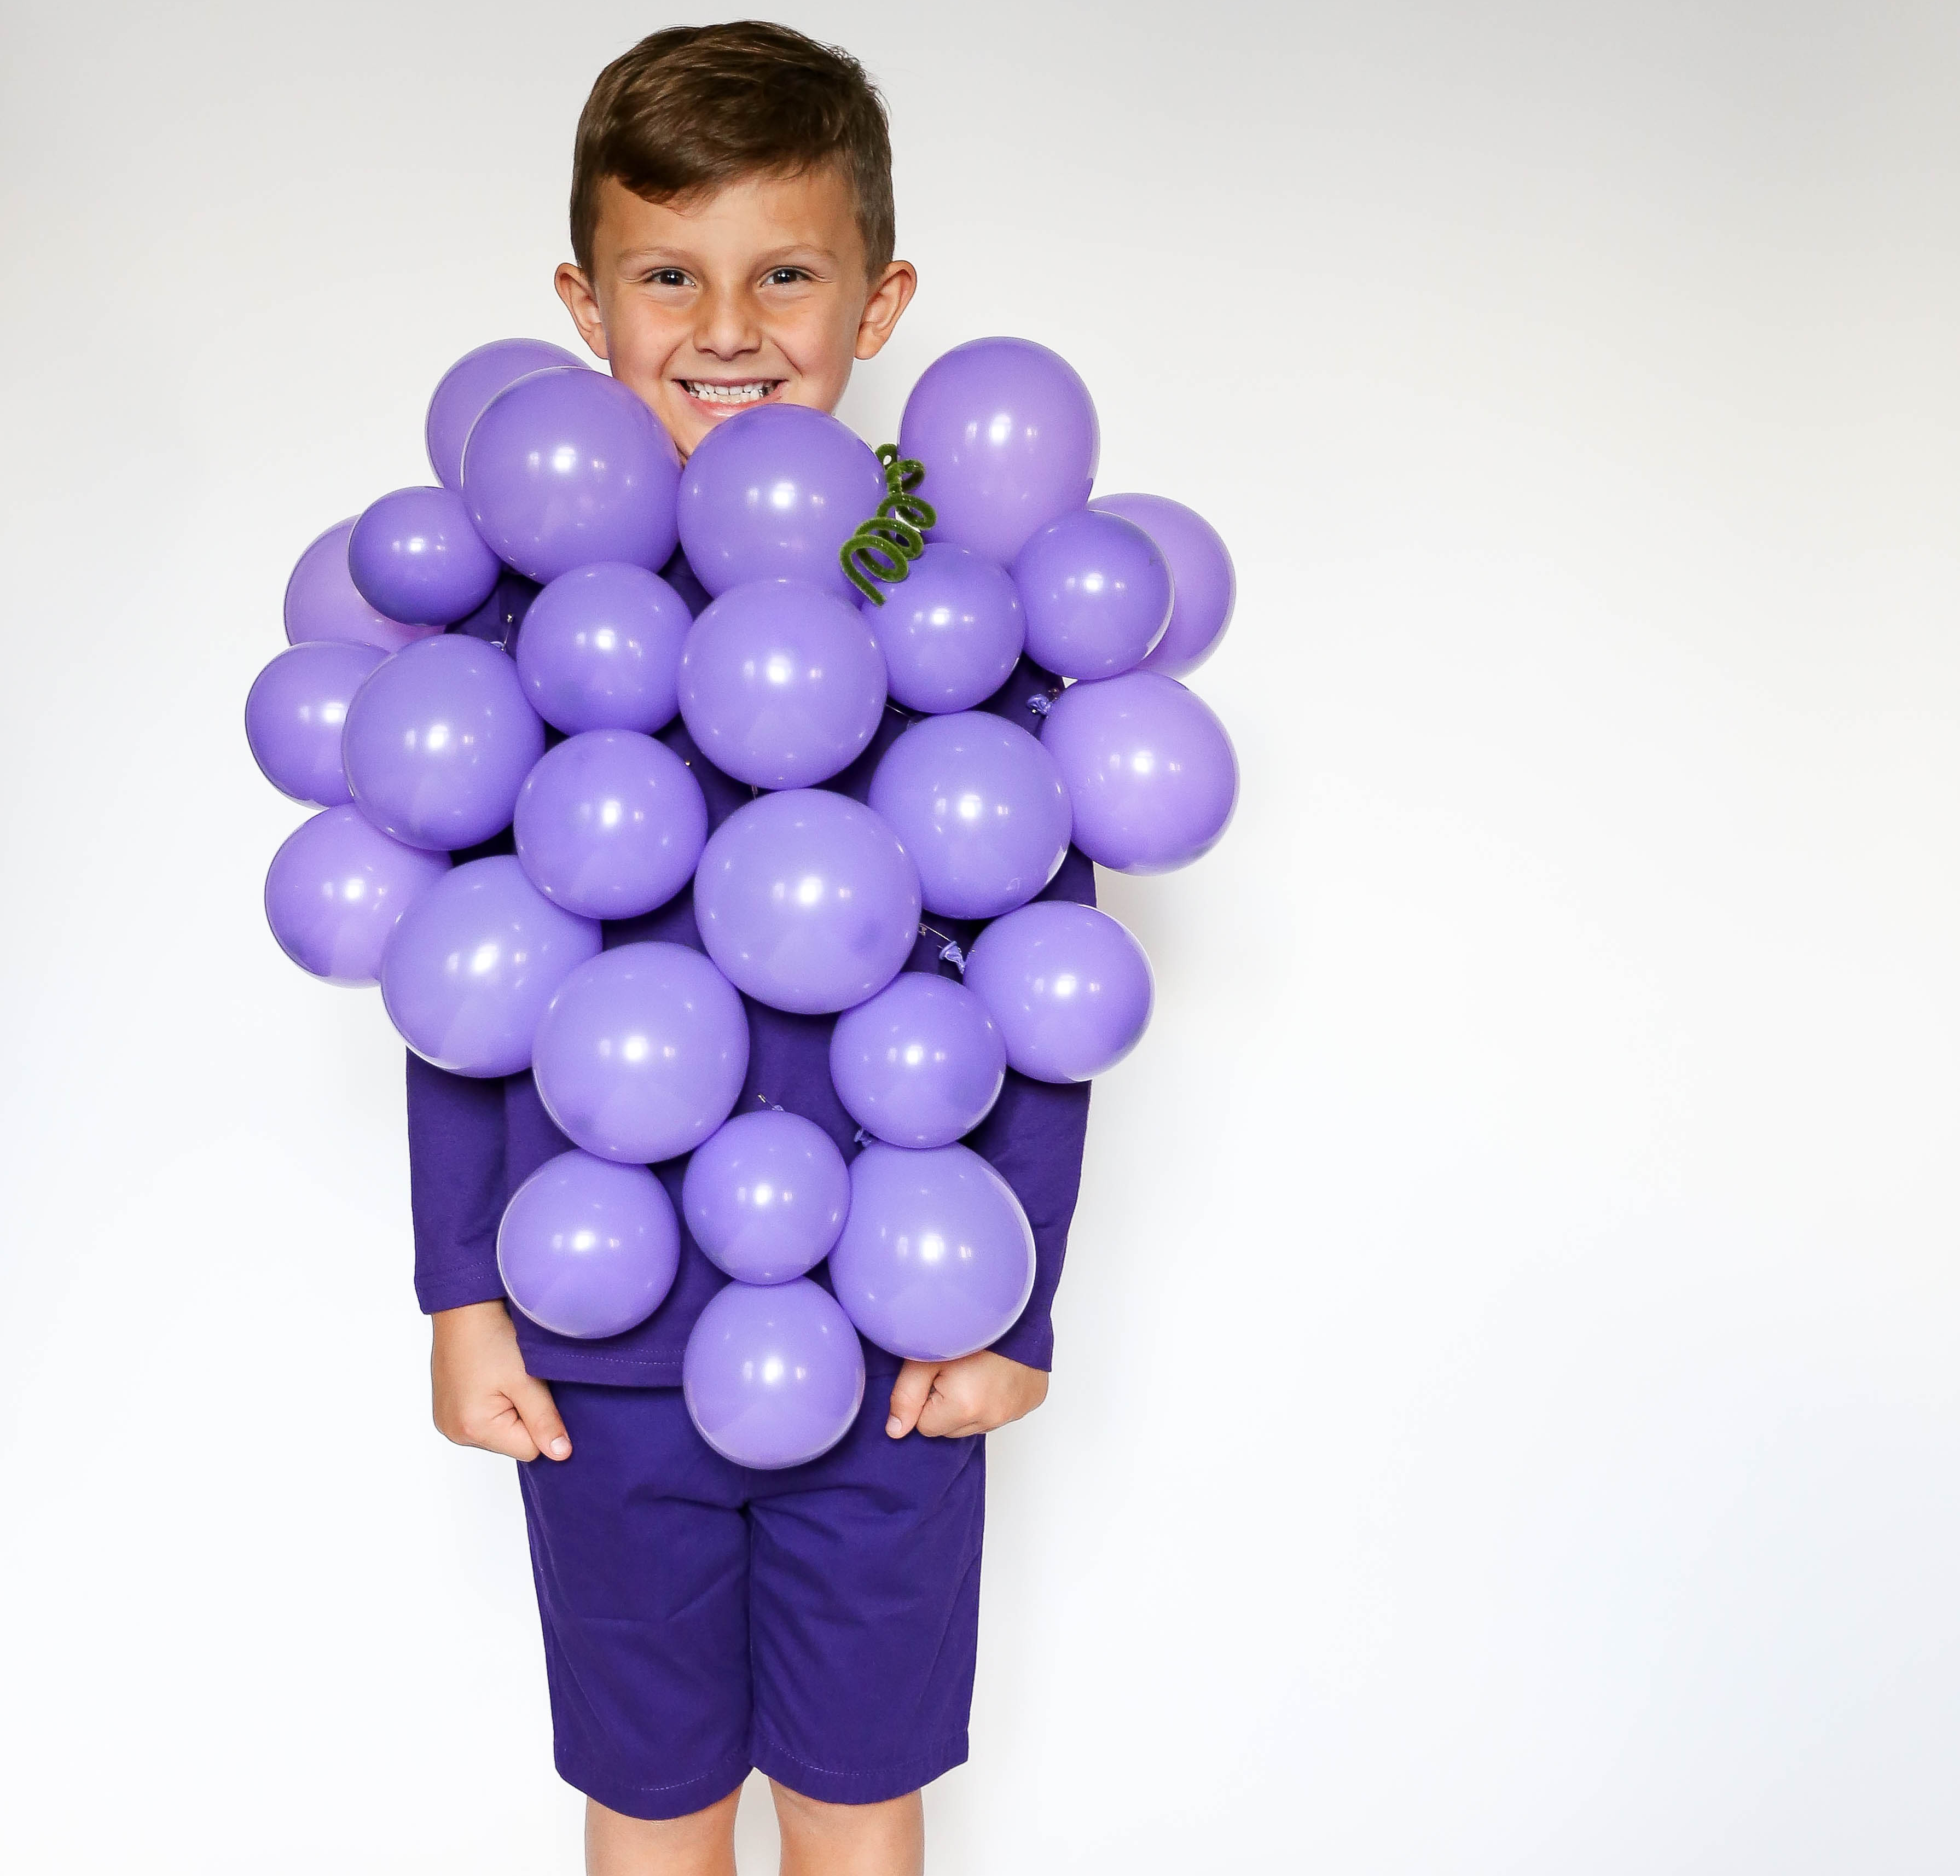 purple balloons